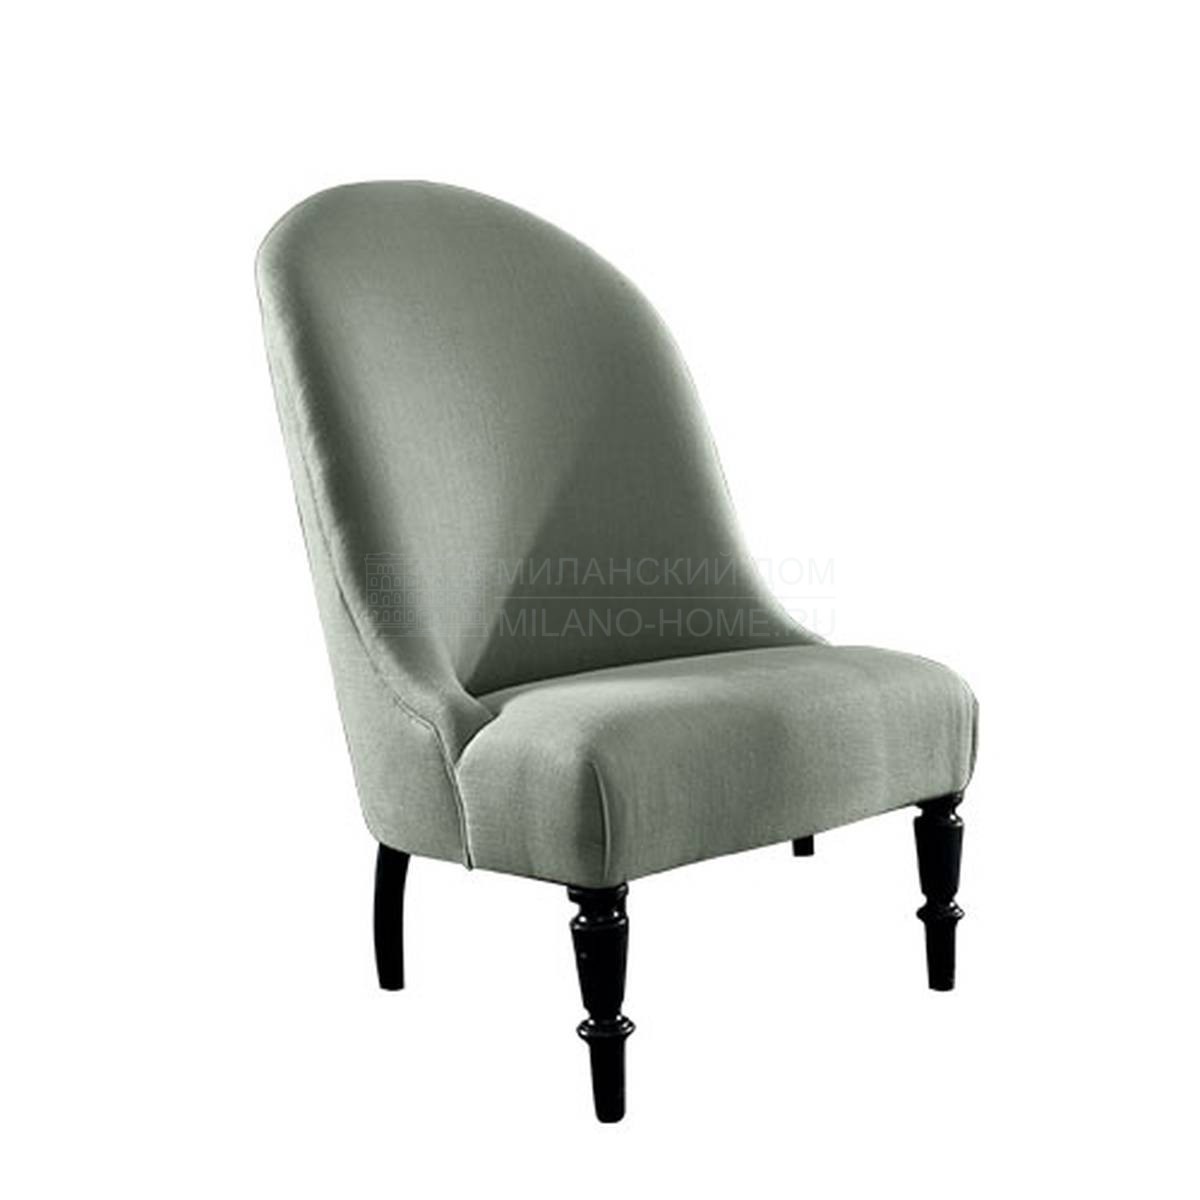 Кресло Chloe/ armchair из Италии фабрики SOFTHOUSE